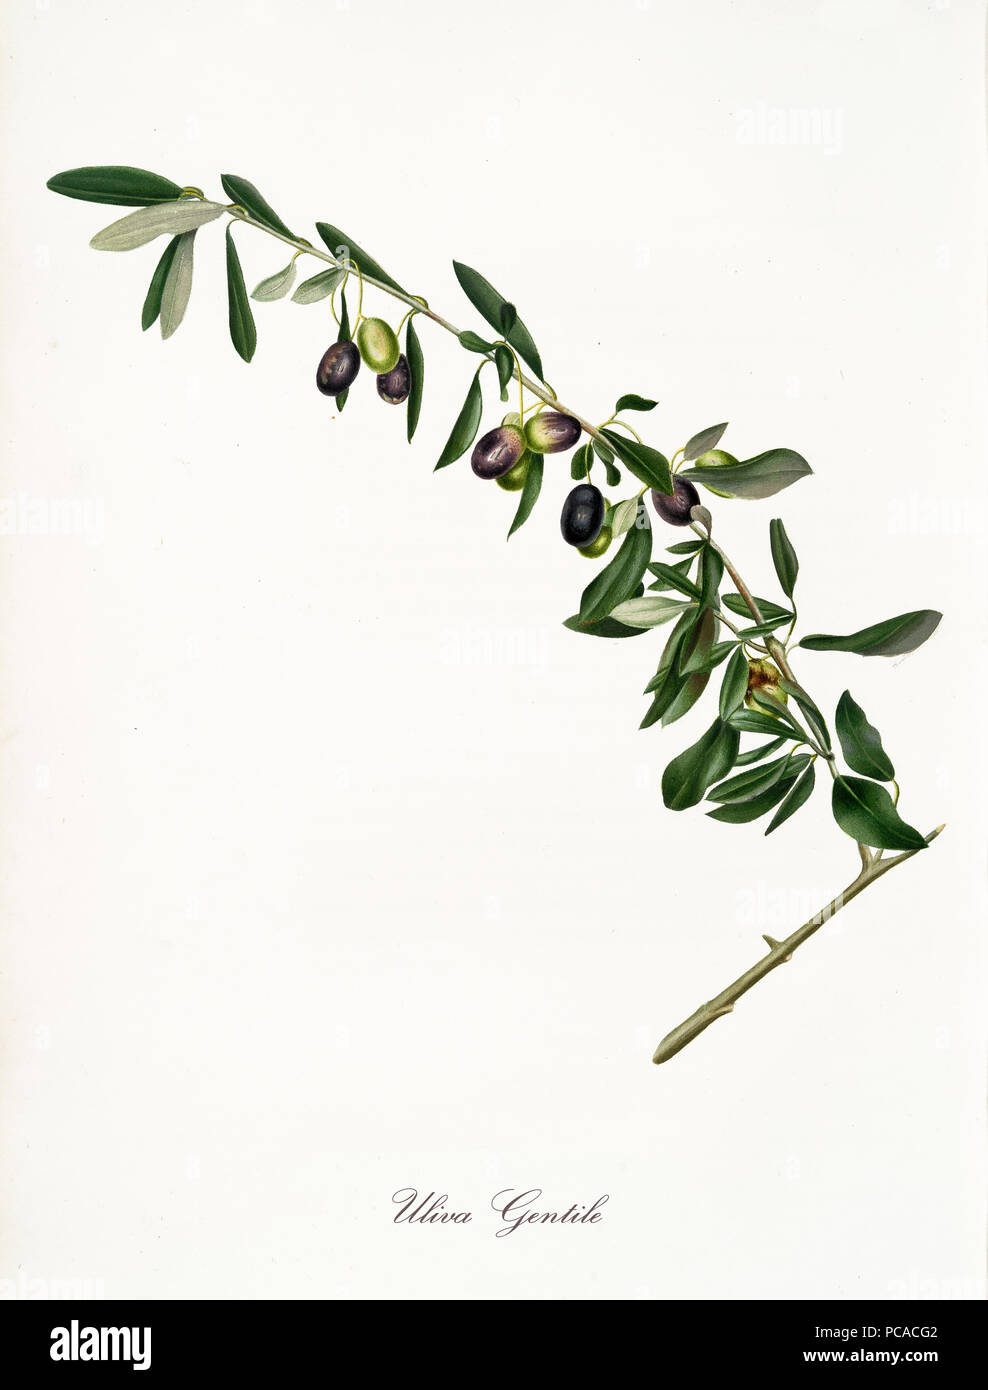 Direction générale de l'arbre d'olive isolé, appelé Gentile, olive Olive Tree leaf sur fond blanc. Vieille illustration botanique réalisé avec une aquarelle de Giorgio Gallesio sur 1817,1839 Italie Banque D'Images